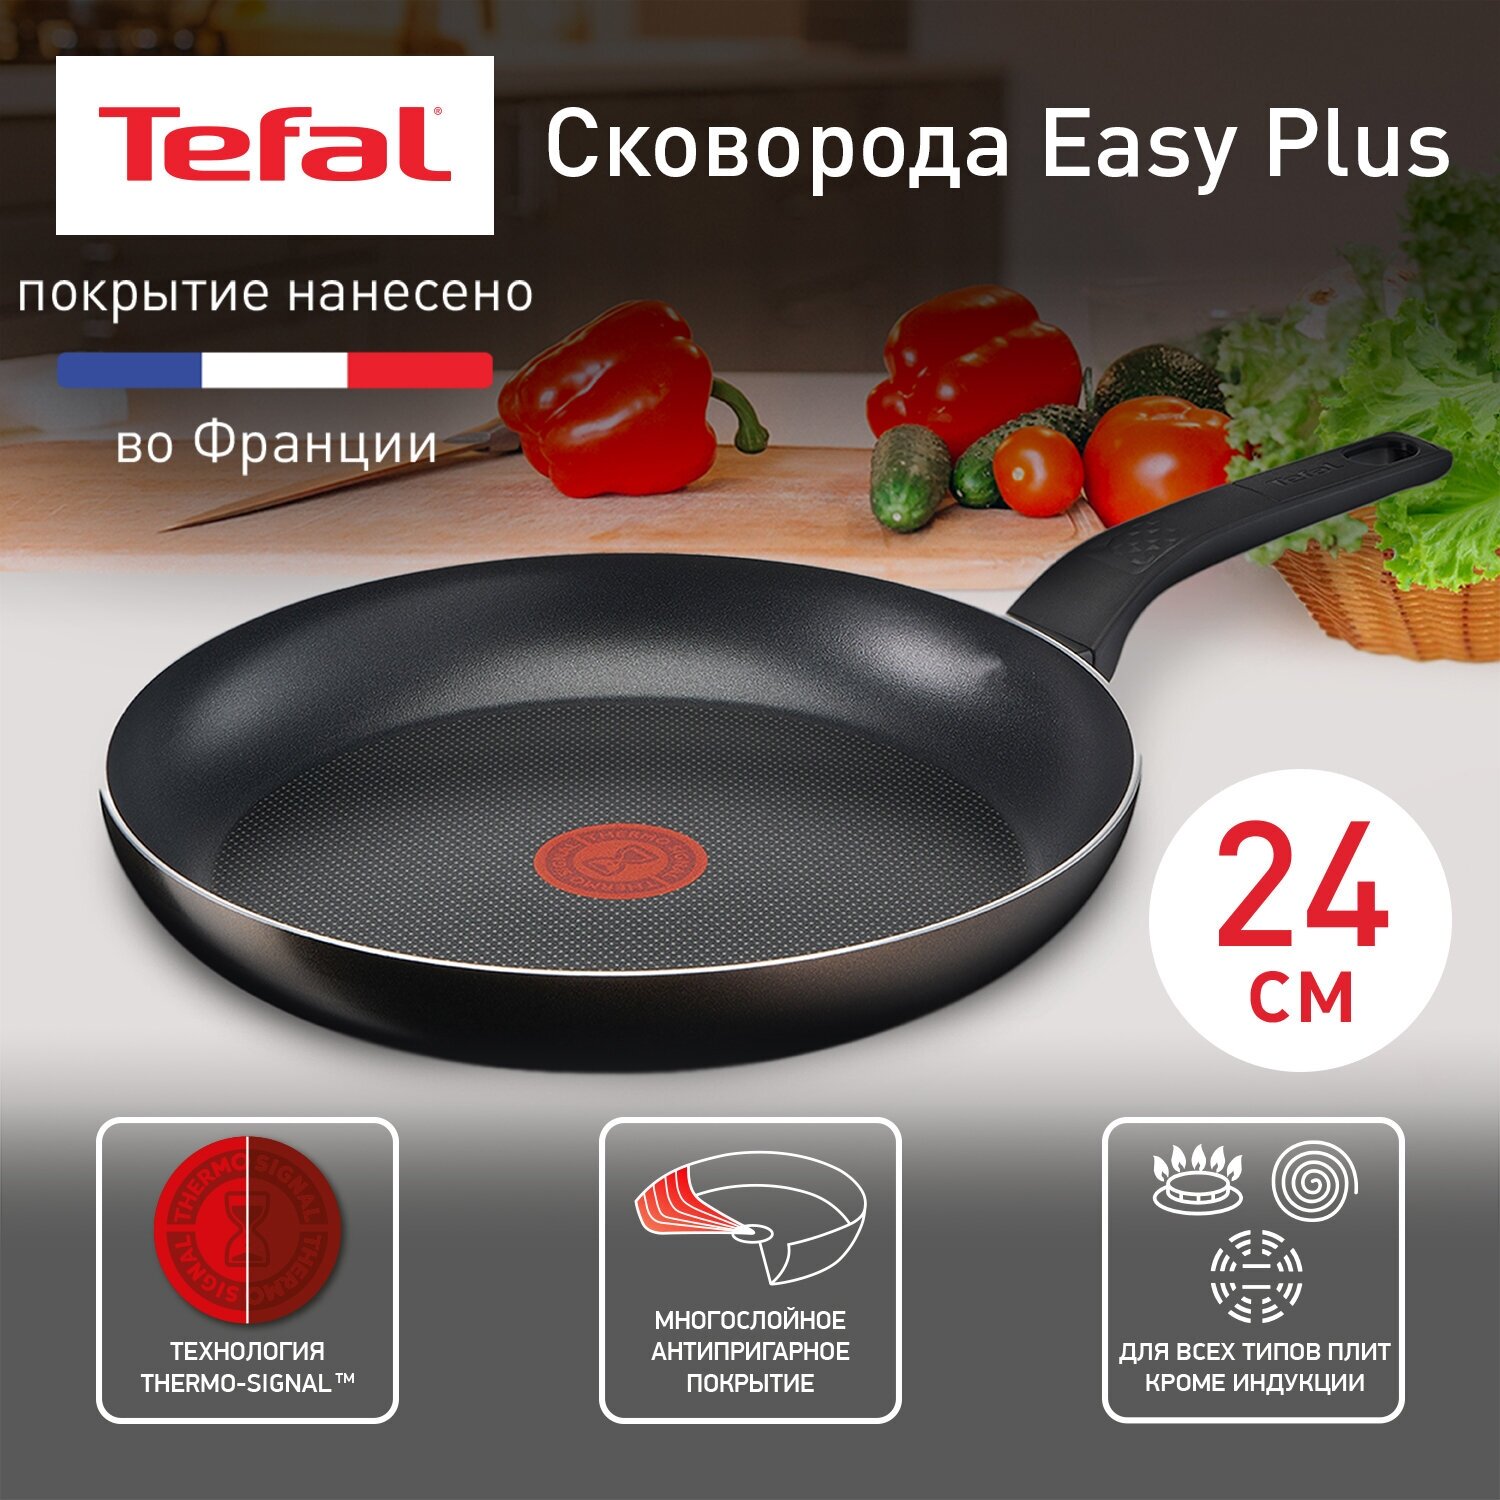 Сковорода Tefal Easy Plus 24 см